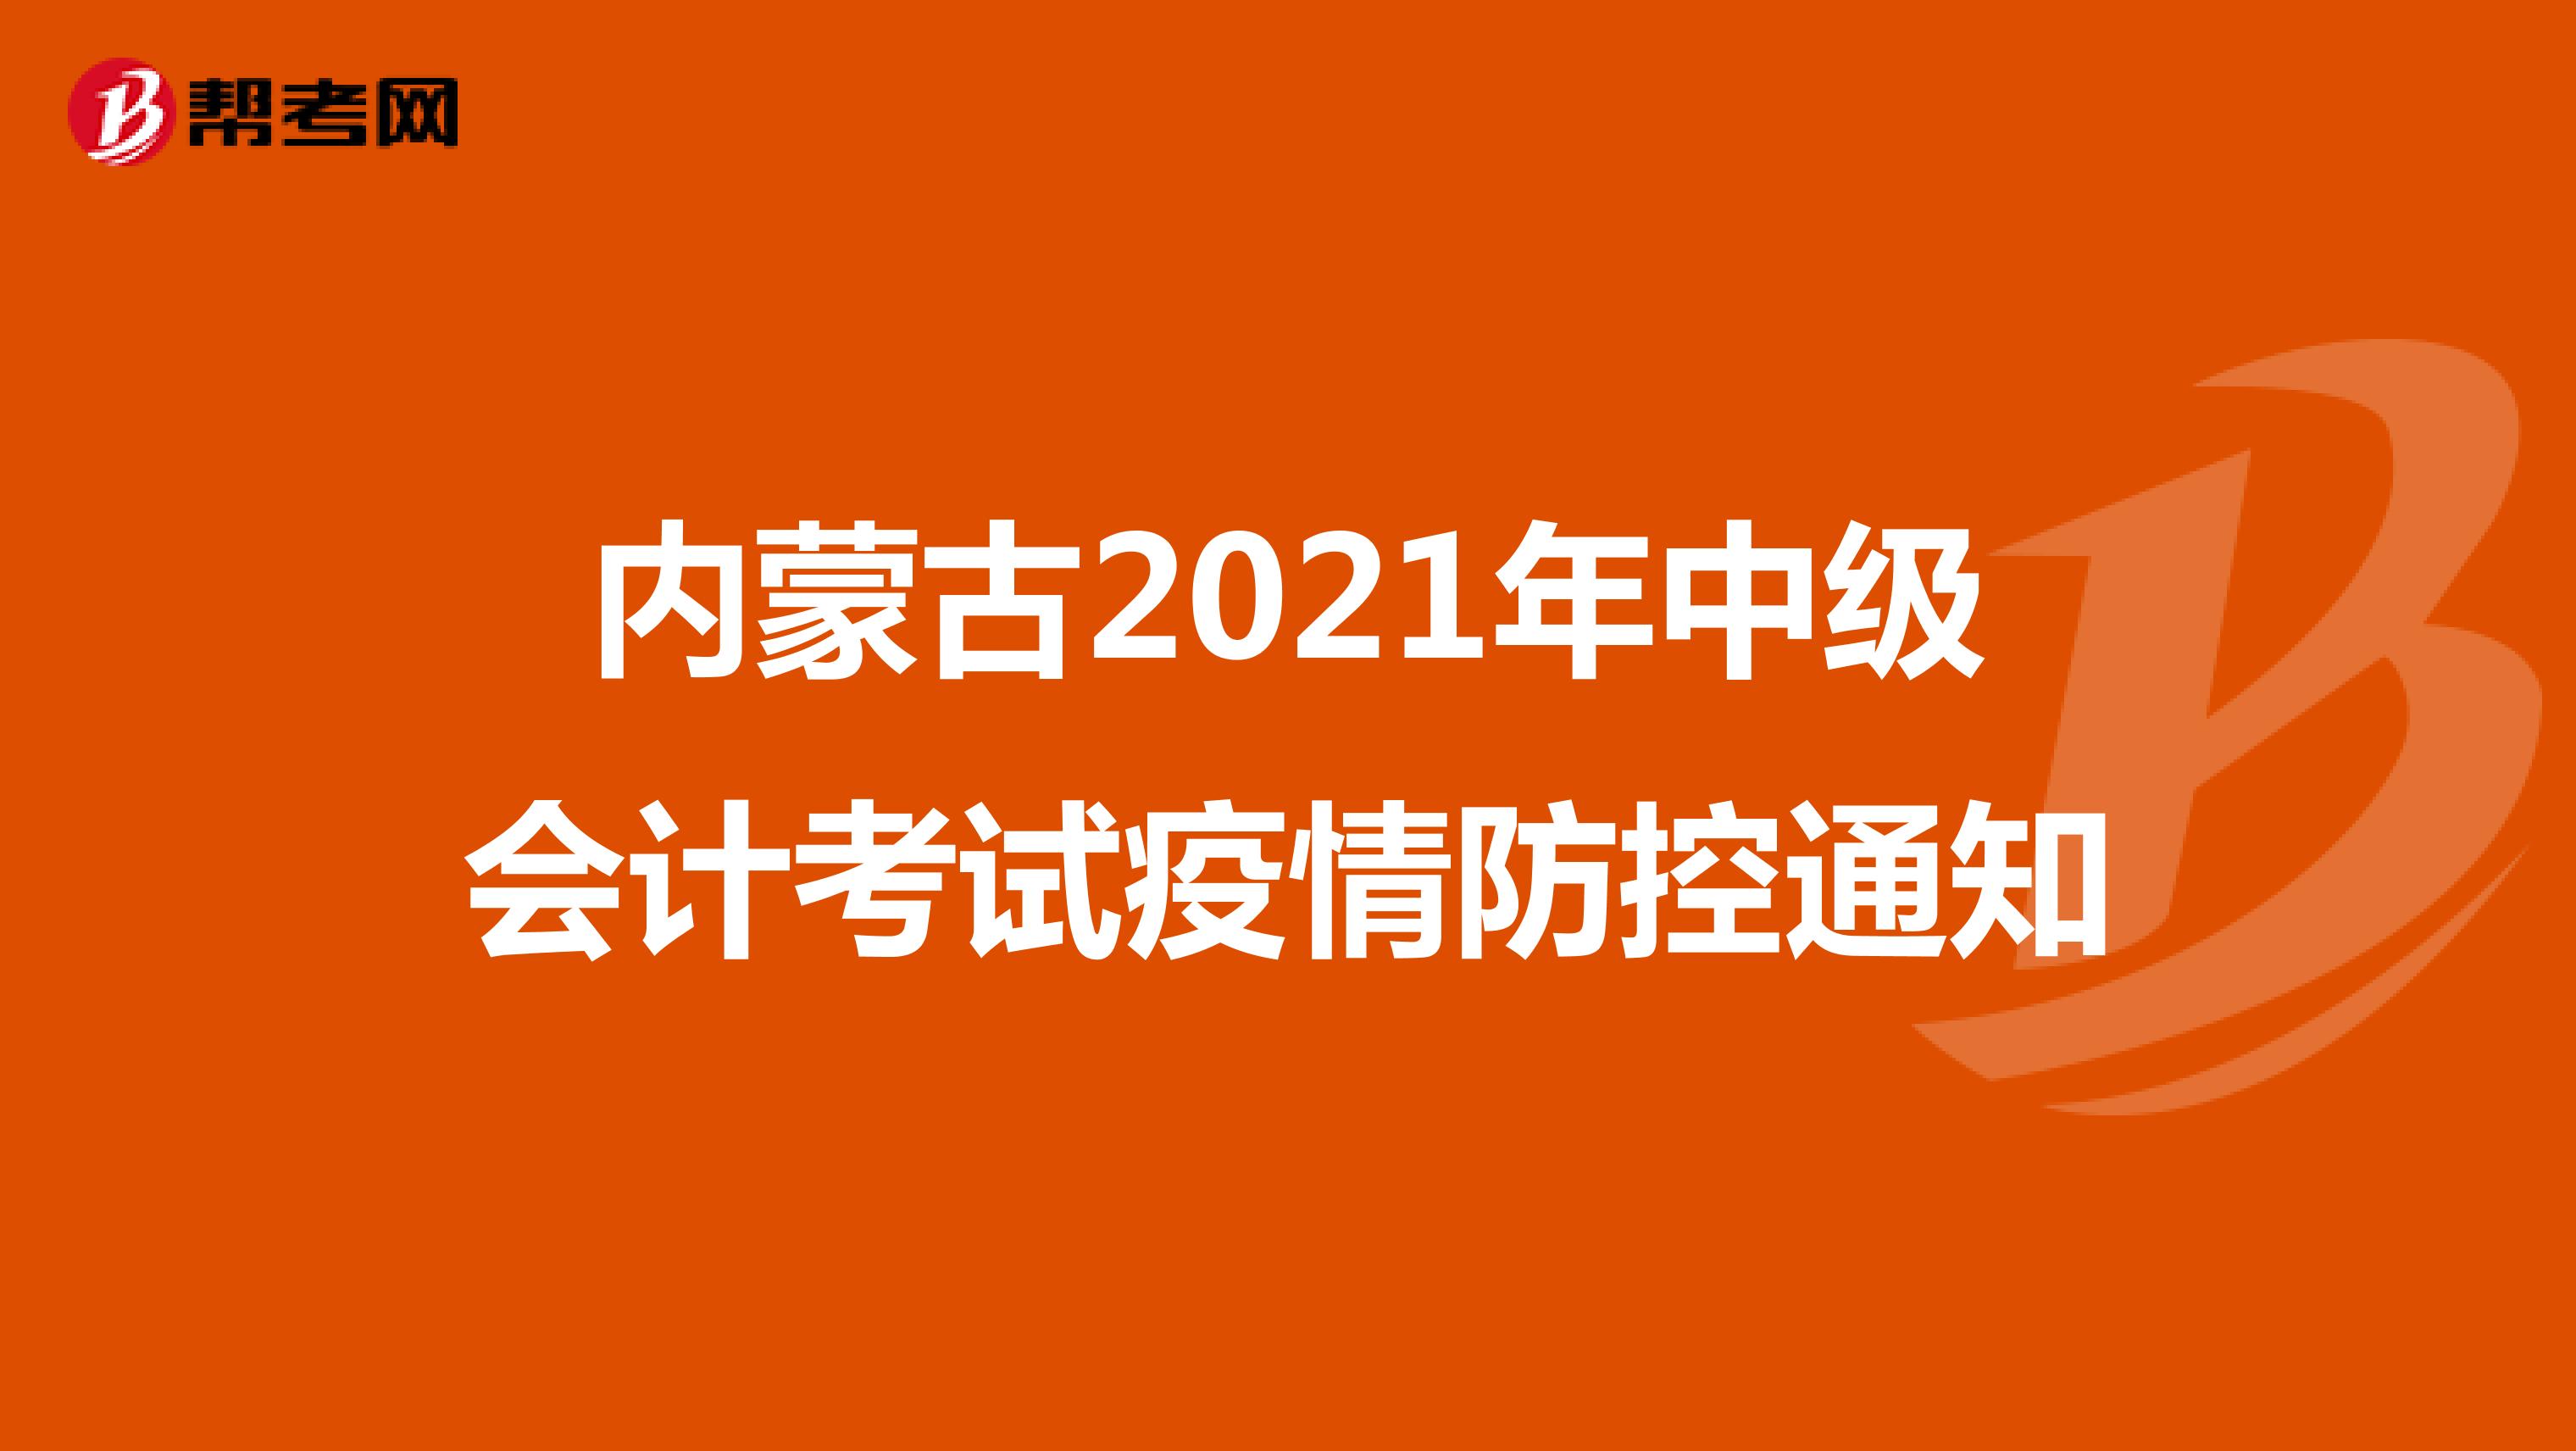 内蒙古2021年中级会计考试疫情防控通知